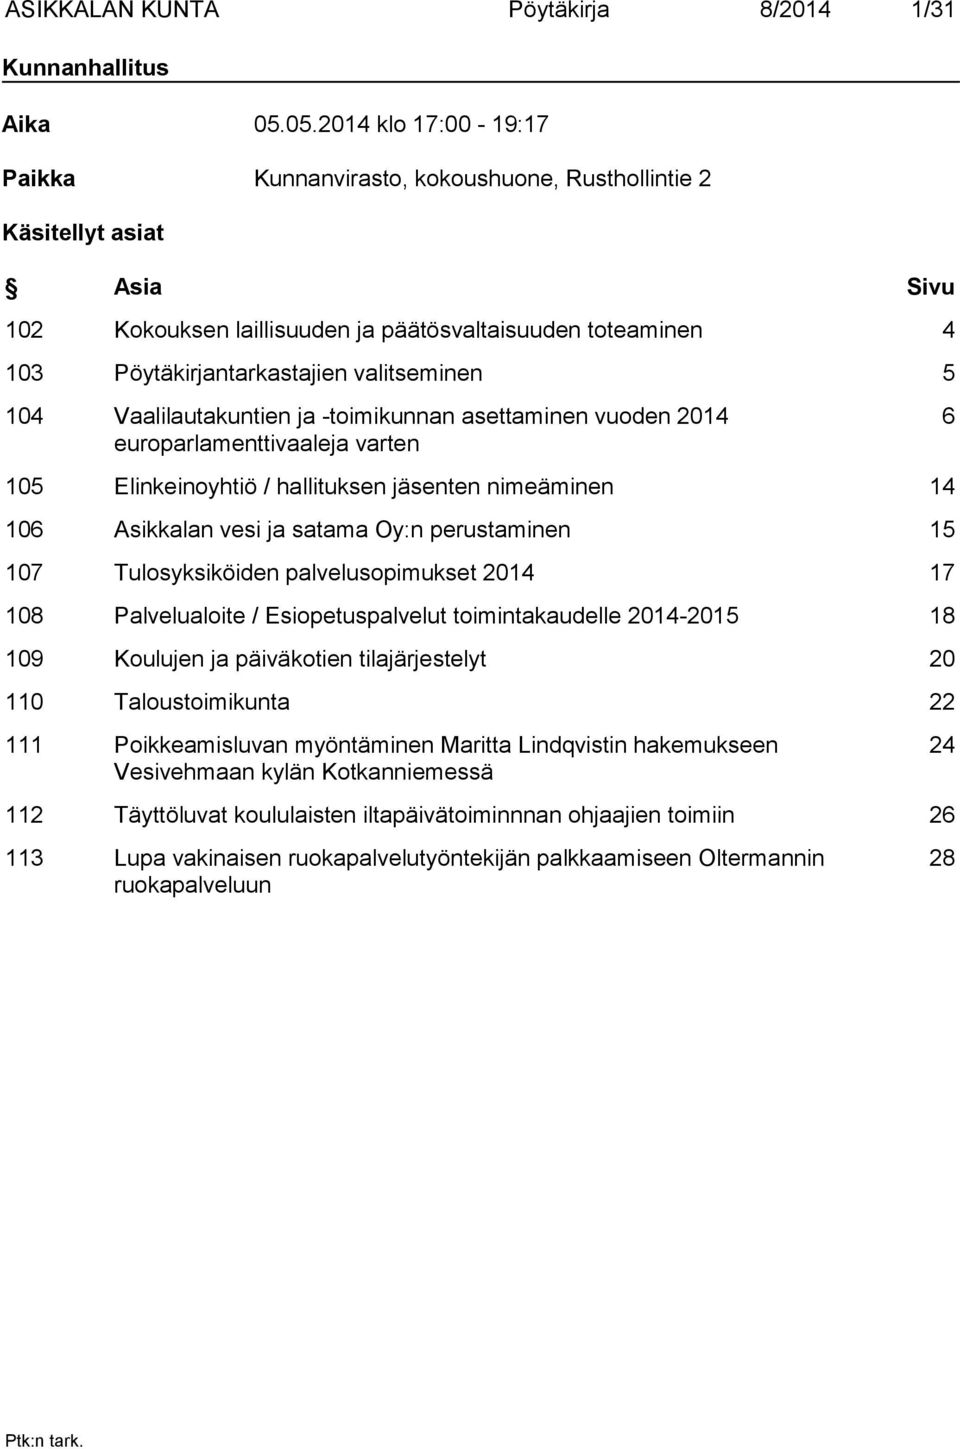 valitseminen 5 104 Vaalilautakuntien ja -toimikunnan asettaminen vuoden 2014 europarlamenttivaaleja varten 6 105 Elinkeinoyhtiö / hallituksen jäsenten nimeäminen 14 106 Asikkalan vesi ja satama Oy:n